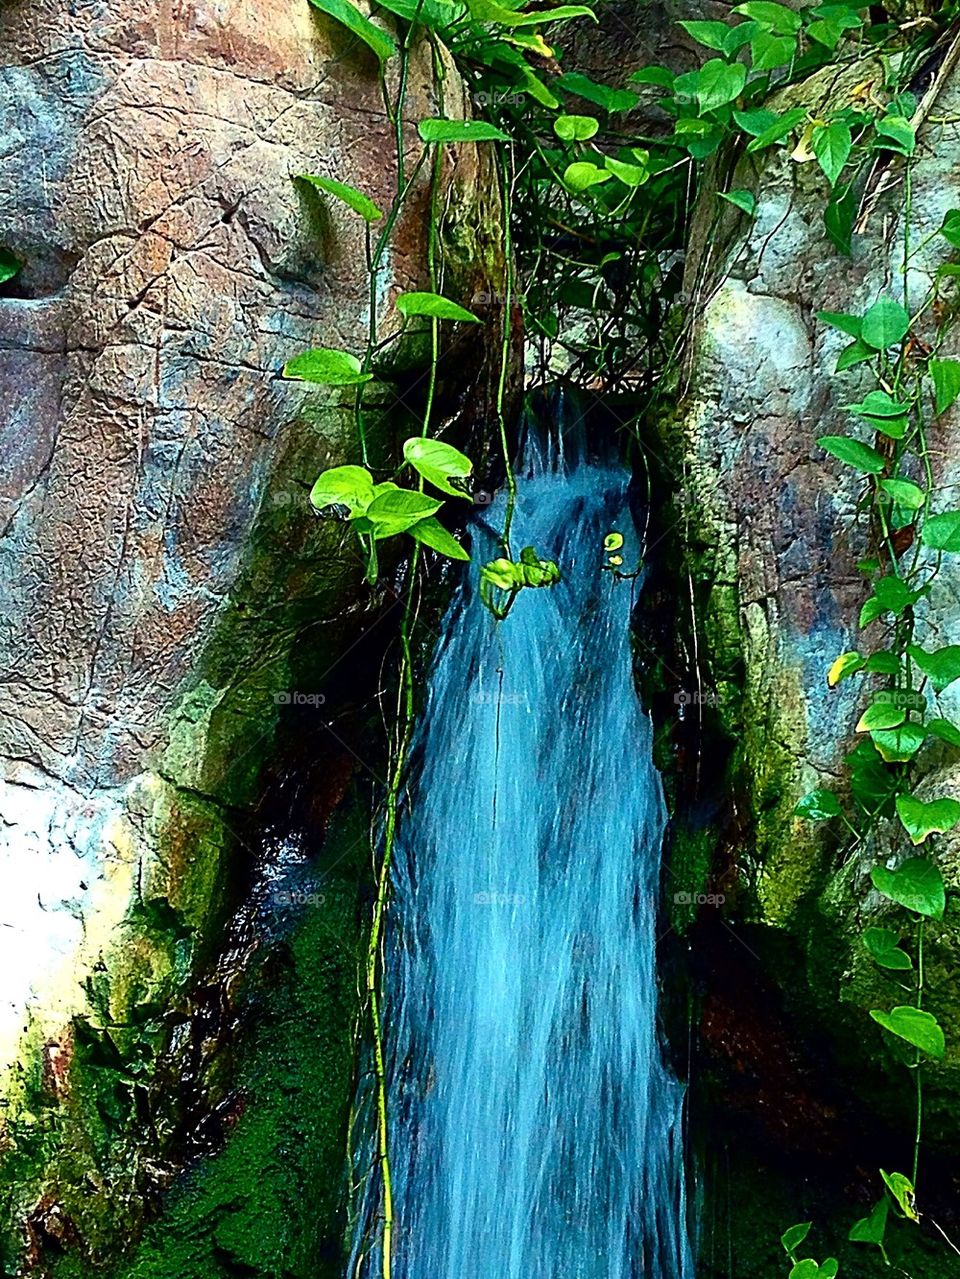 Jungle waterfall 